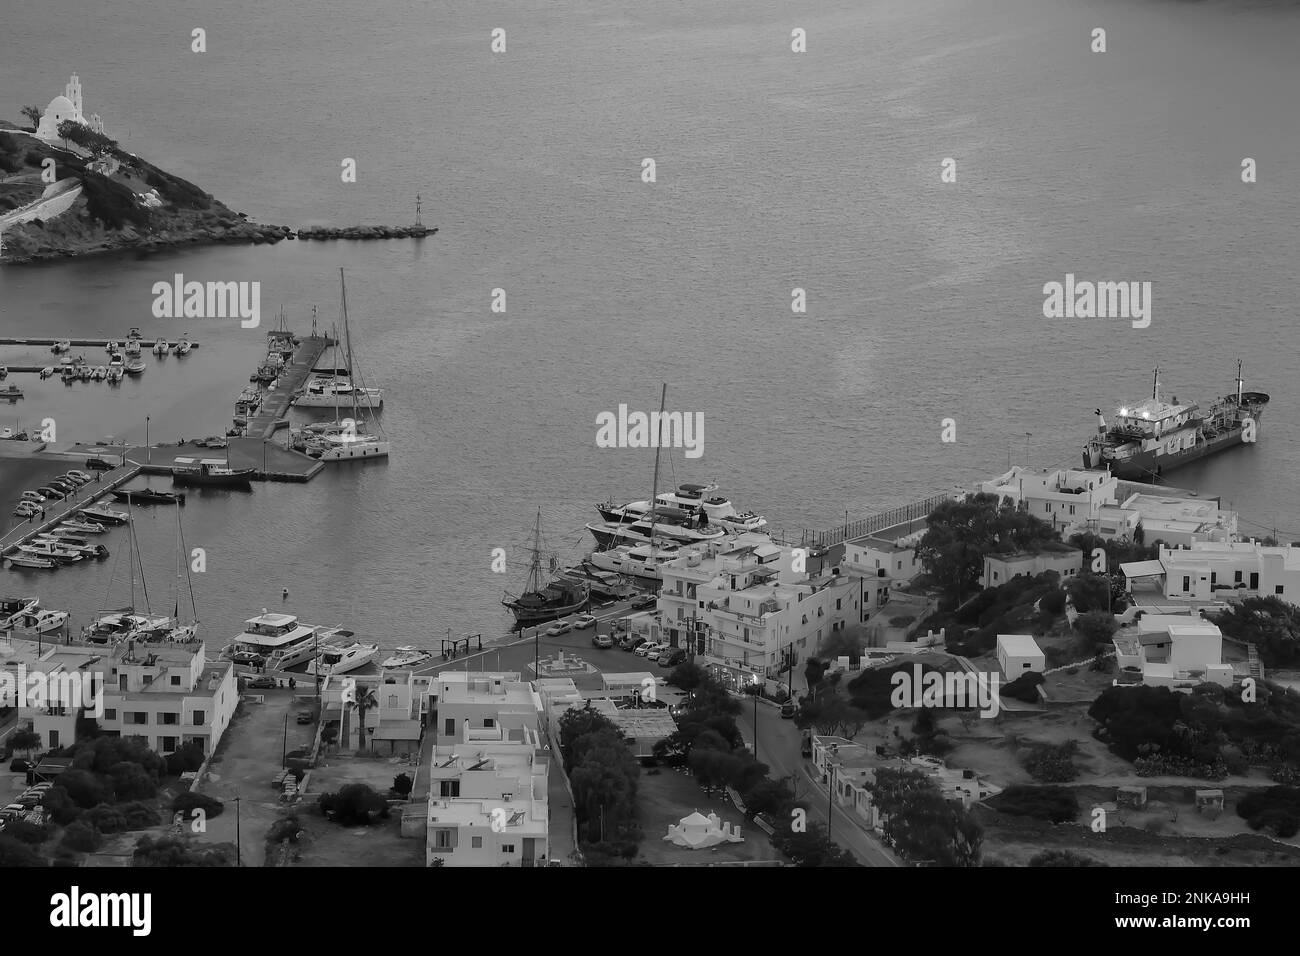 IOS, Grèce - 30 mai 2021 : vue panoramique du port d'iOS Grèce, avec des bateaux, voiliers et divers bâtiments blanchis à la chaux en noir et blanc Banque D'Images